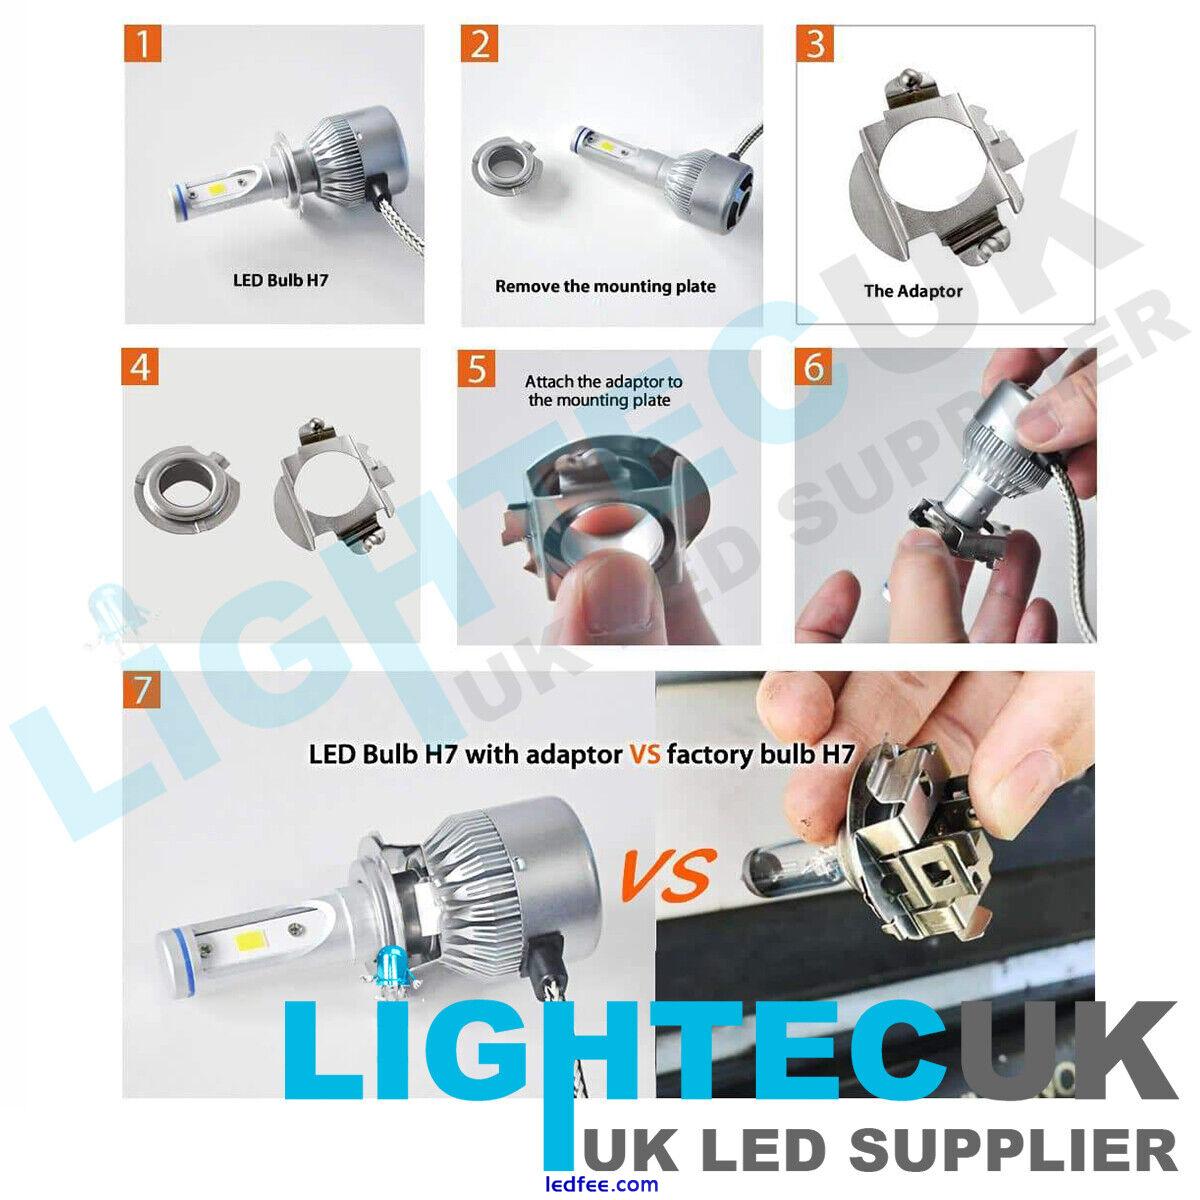 2 LIGHTEC UK UNIVERSAL H7 LED RETAINER BULB HOLDER CLIP ADAPTER HEAD LIGHT  3 